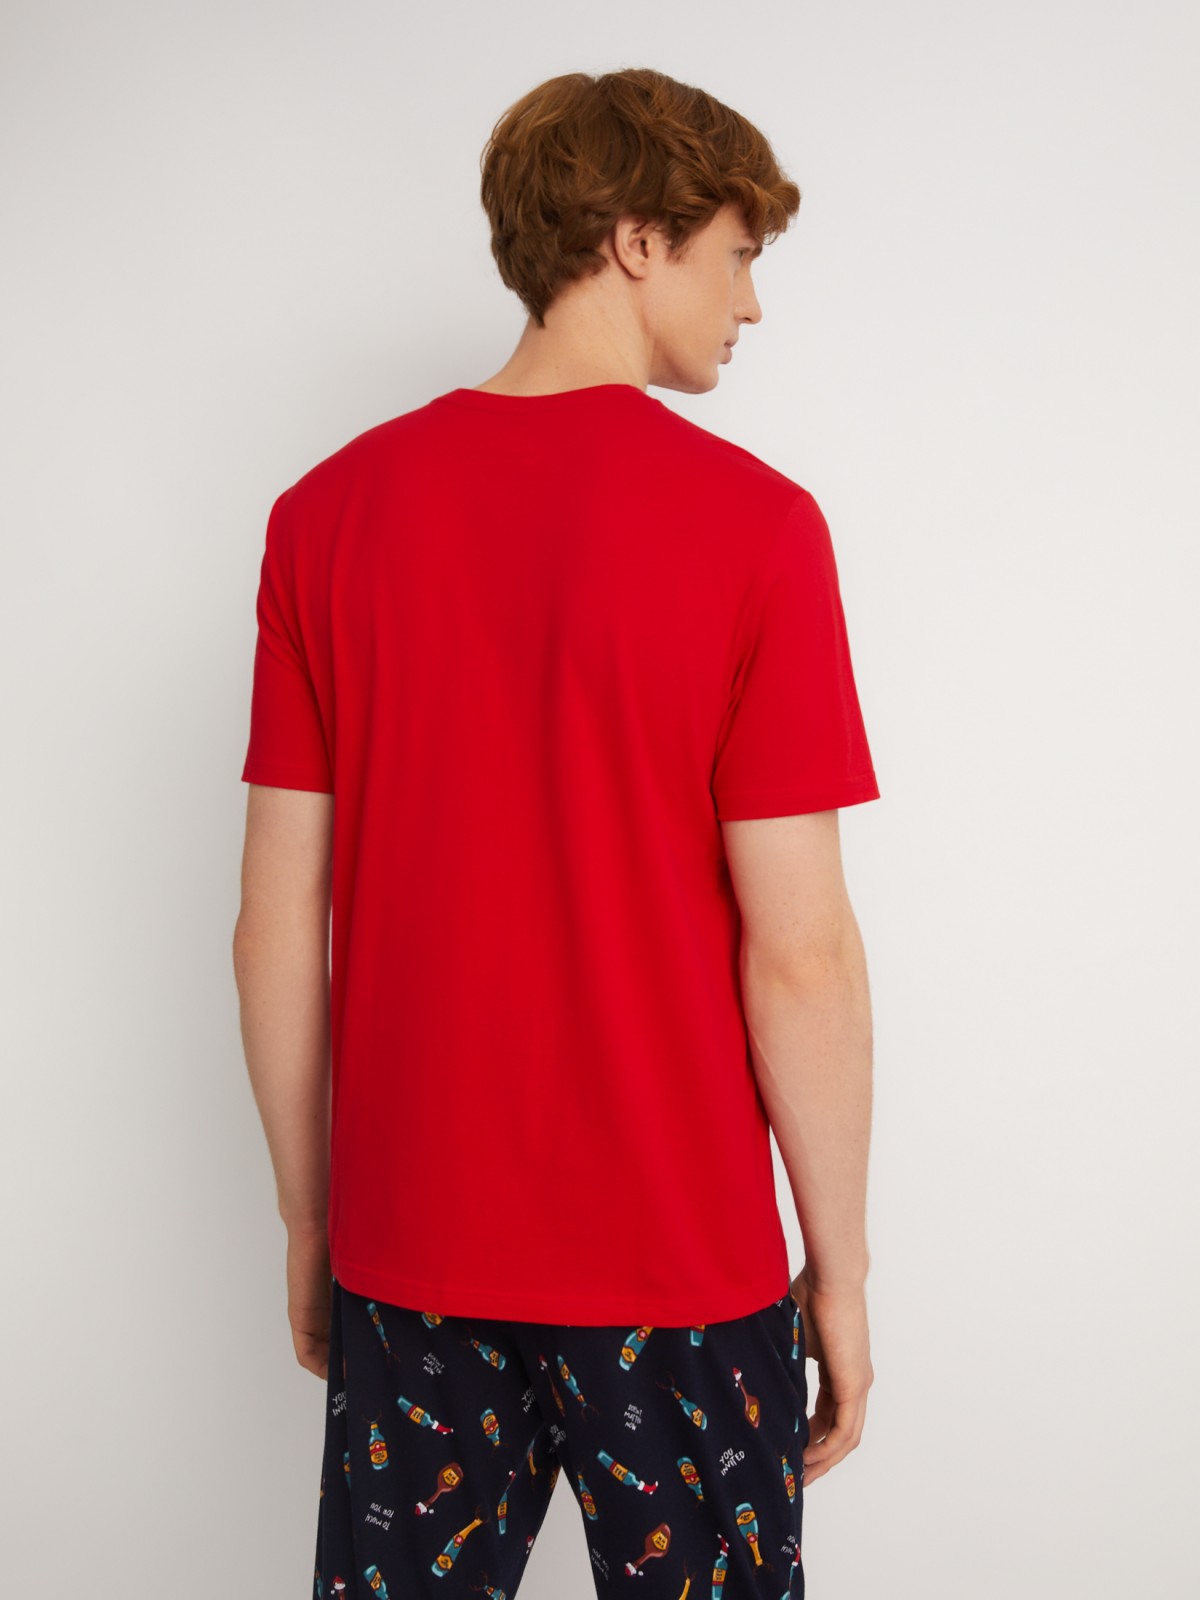 Домашний пижамный комплект новогодний (футболка и штаны) zolla 613458759051, цвет красный, размер S - фото 3